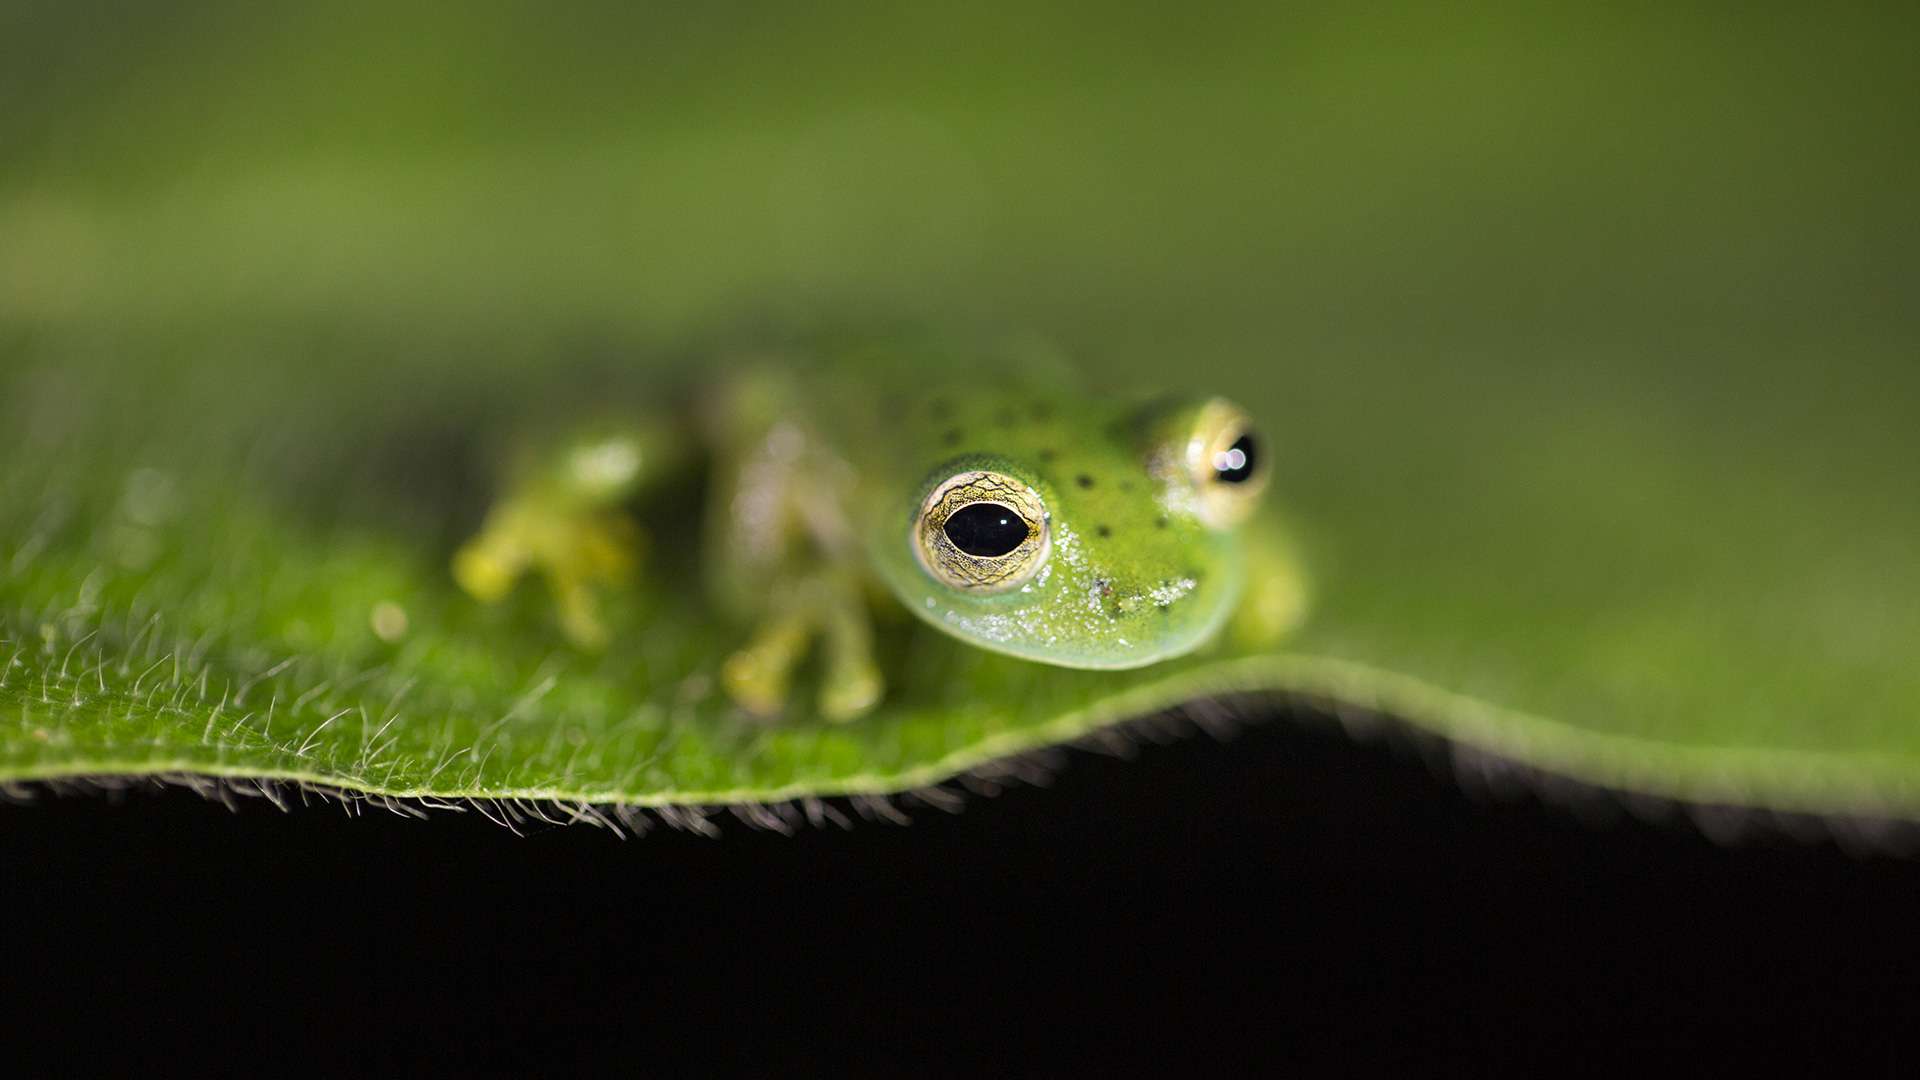 Photographie de Gilles Martin d'une grenouille du Costa Rica